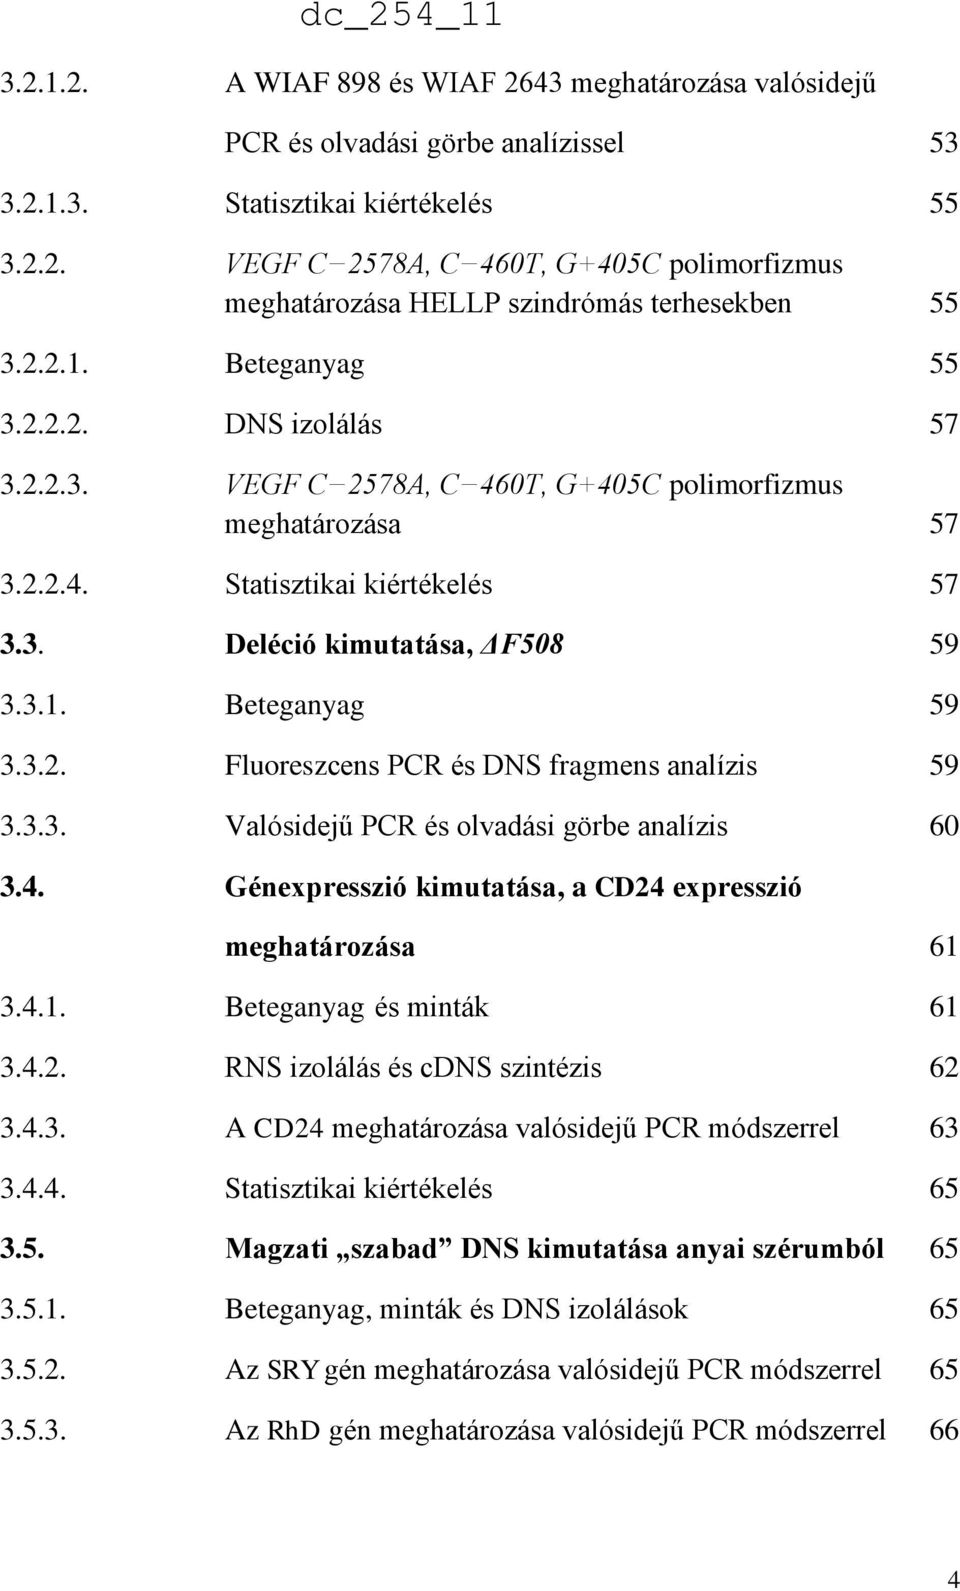 3.2. Fluoreszcens PCR és DNS fragmens analízis 59 3.3.3. Valósidejű PCR és olvadási görbe analízis 60 3.4. Génexpresszió kimutatása, a CD24 expresszió meghatározása 61 3.4.1. Beteganyag és minták 61 3.